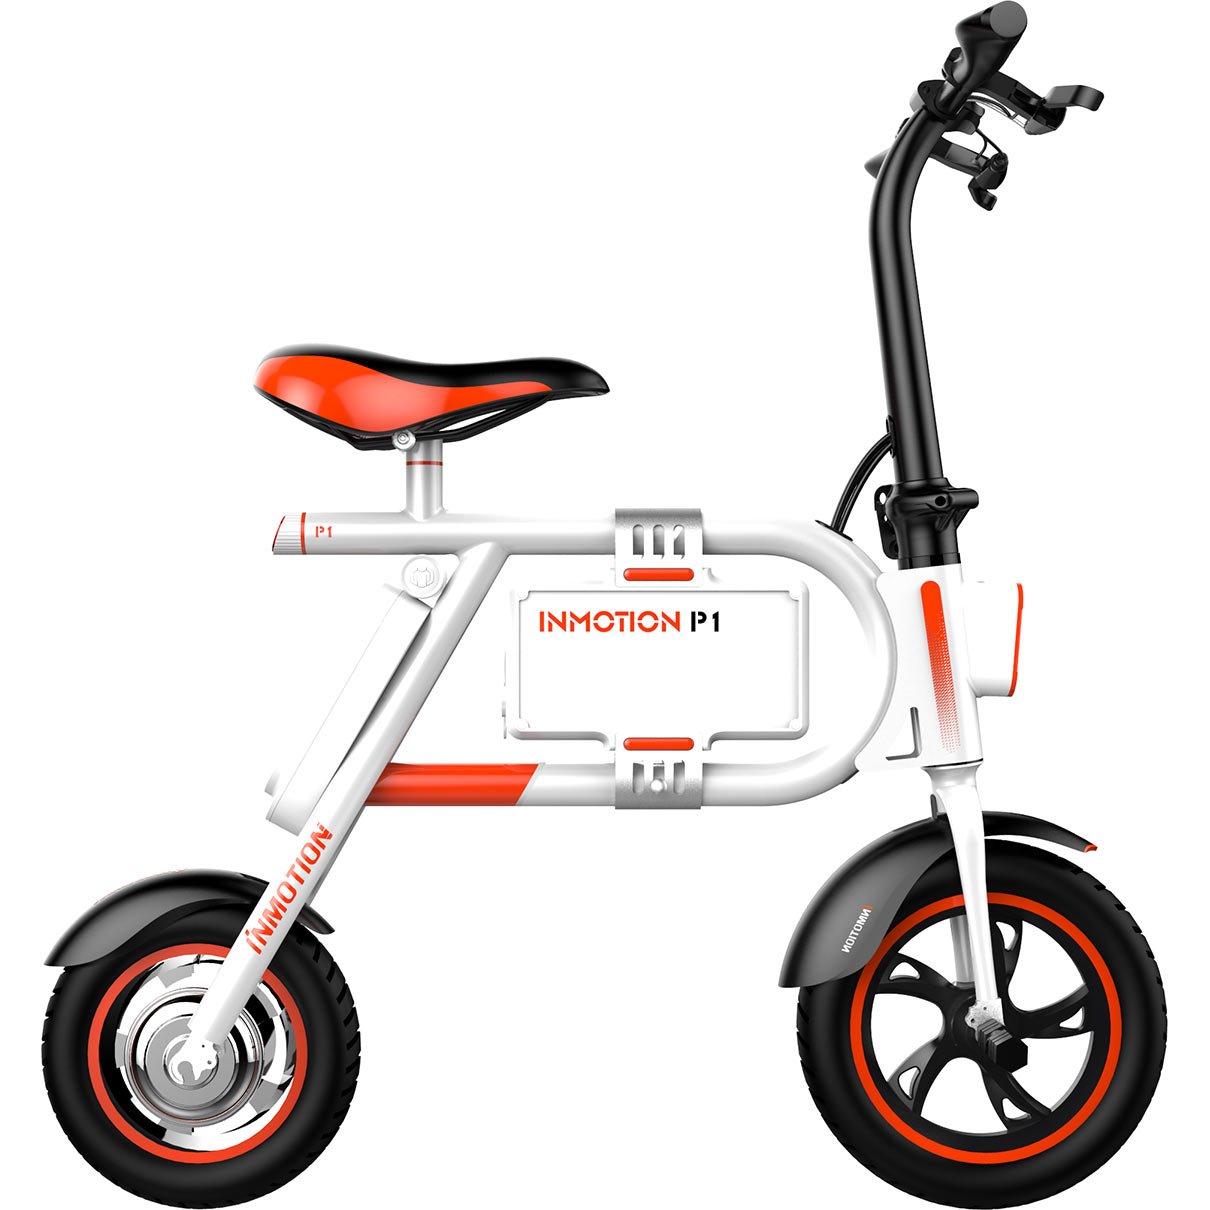 Les Inmotion P1 et P1F sont des mini-scooters électriques pour la ville